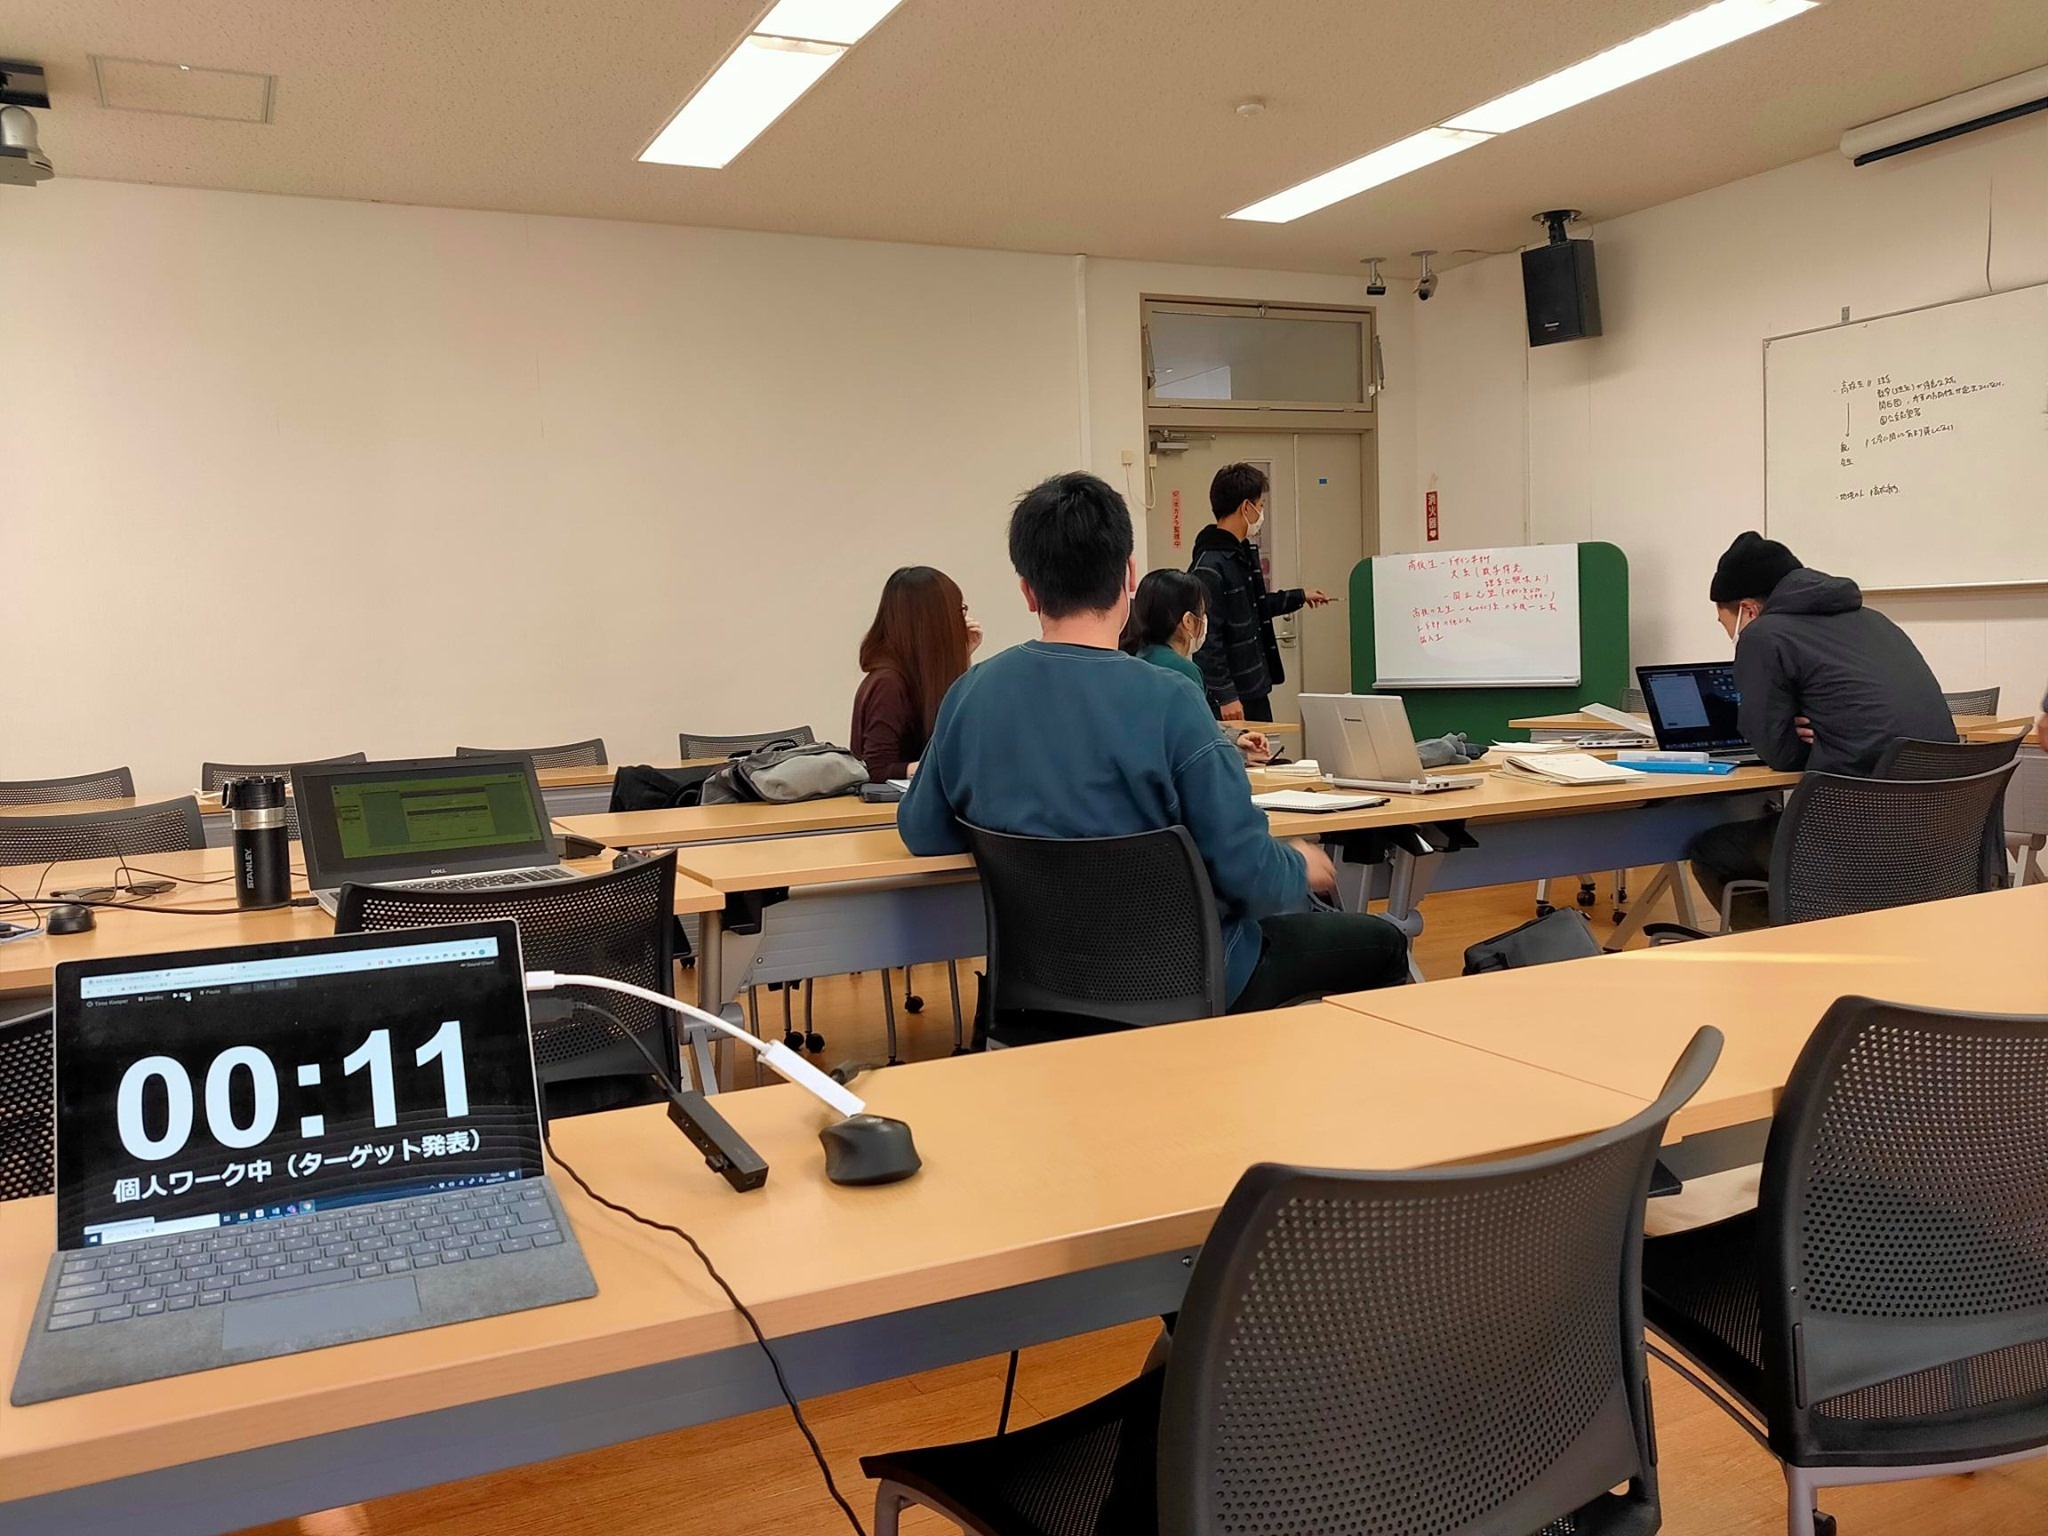 香川大学創造工学部が実施するPBL手法による授業に参加